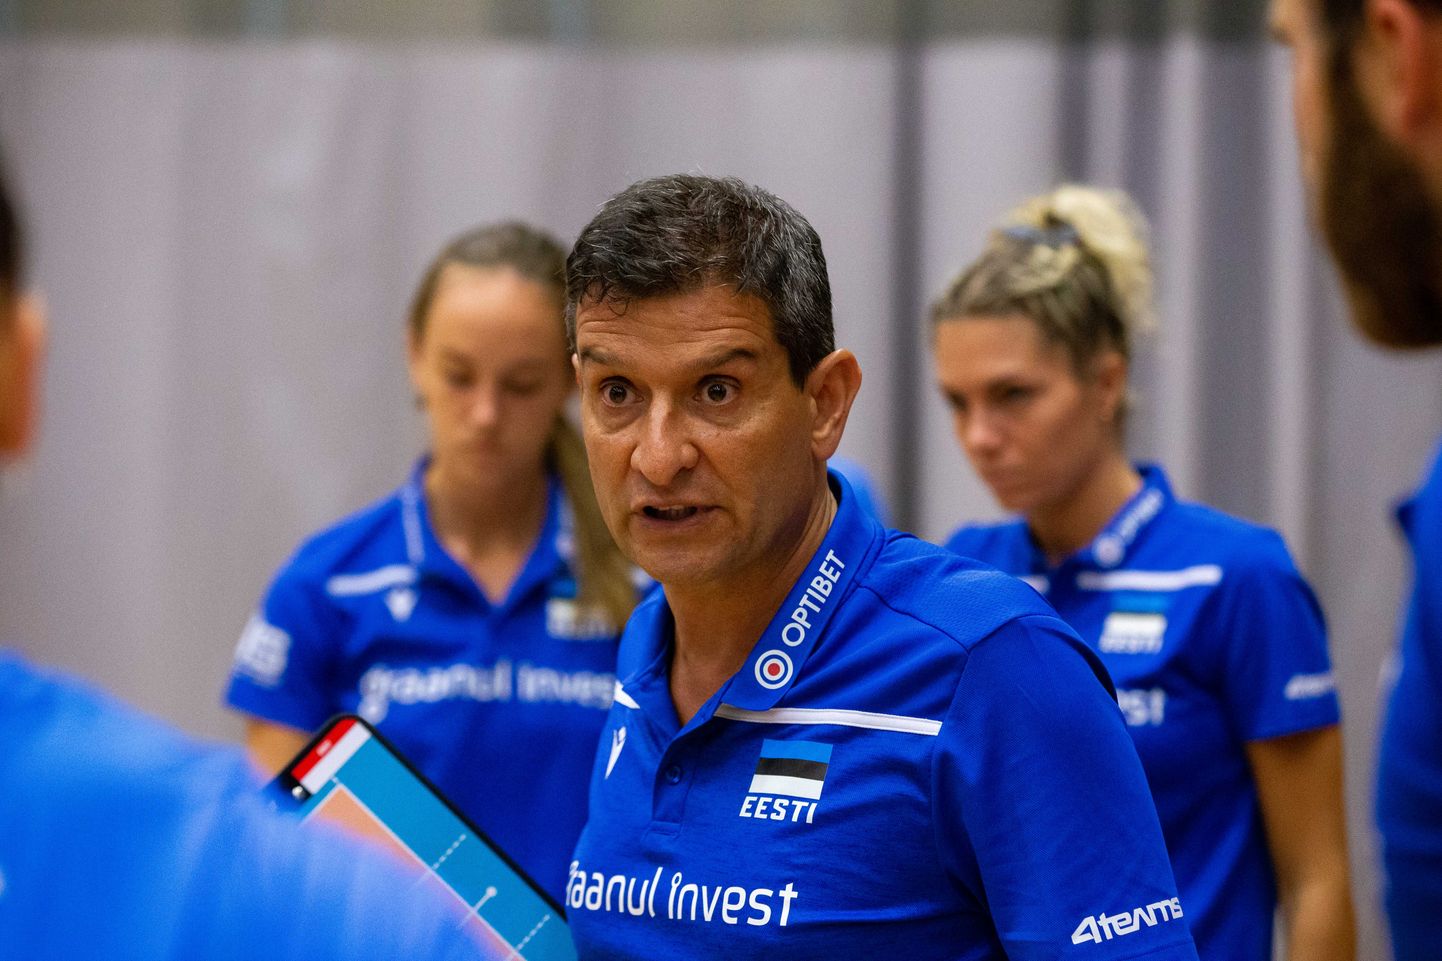 Kas Lorenzo Micelli on nüüd juba endine Eesti naiste koondise peatreener?